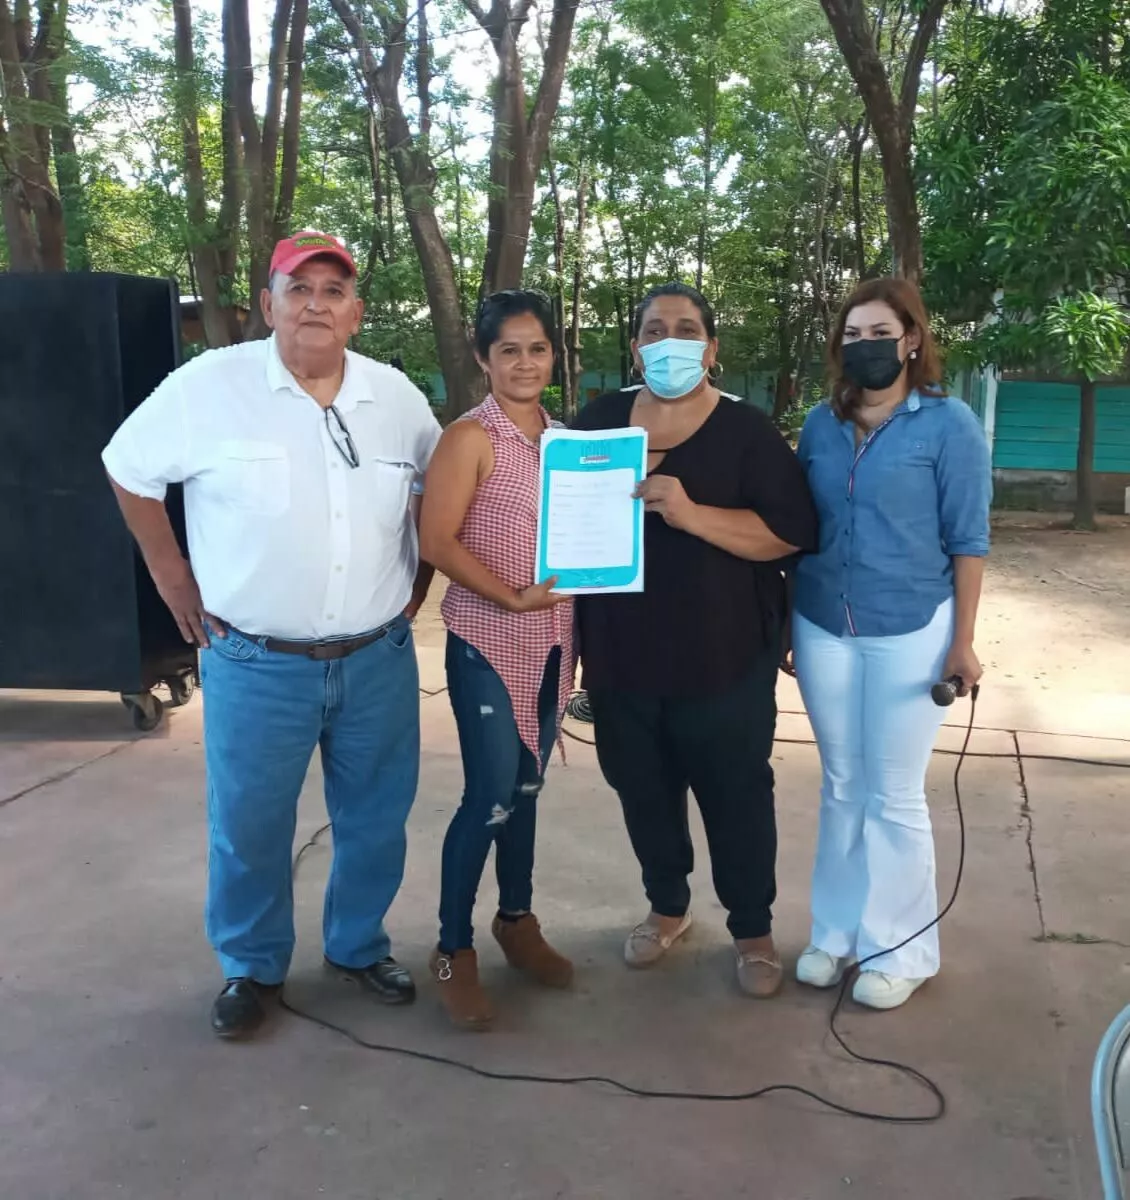 En Choluteca: Gobierno entrega Personería jurídica a 141 cajas rurales